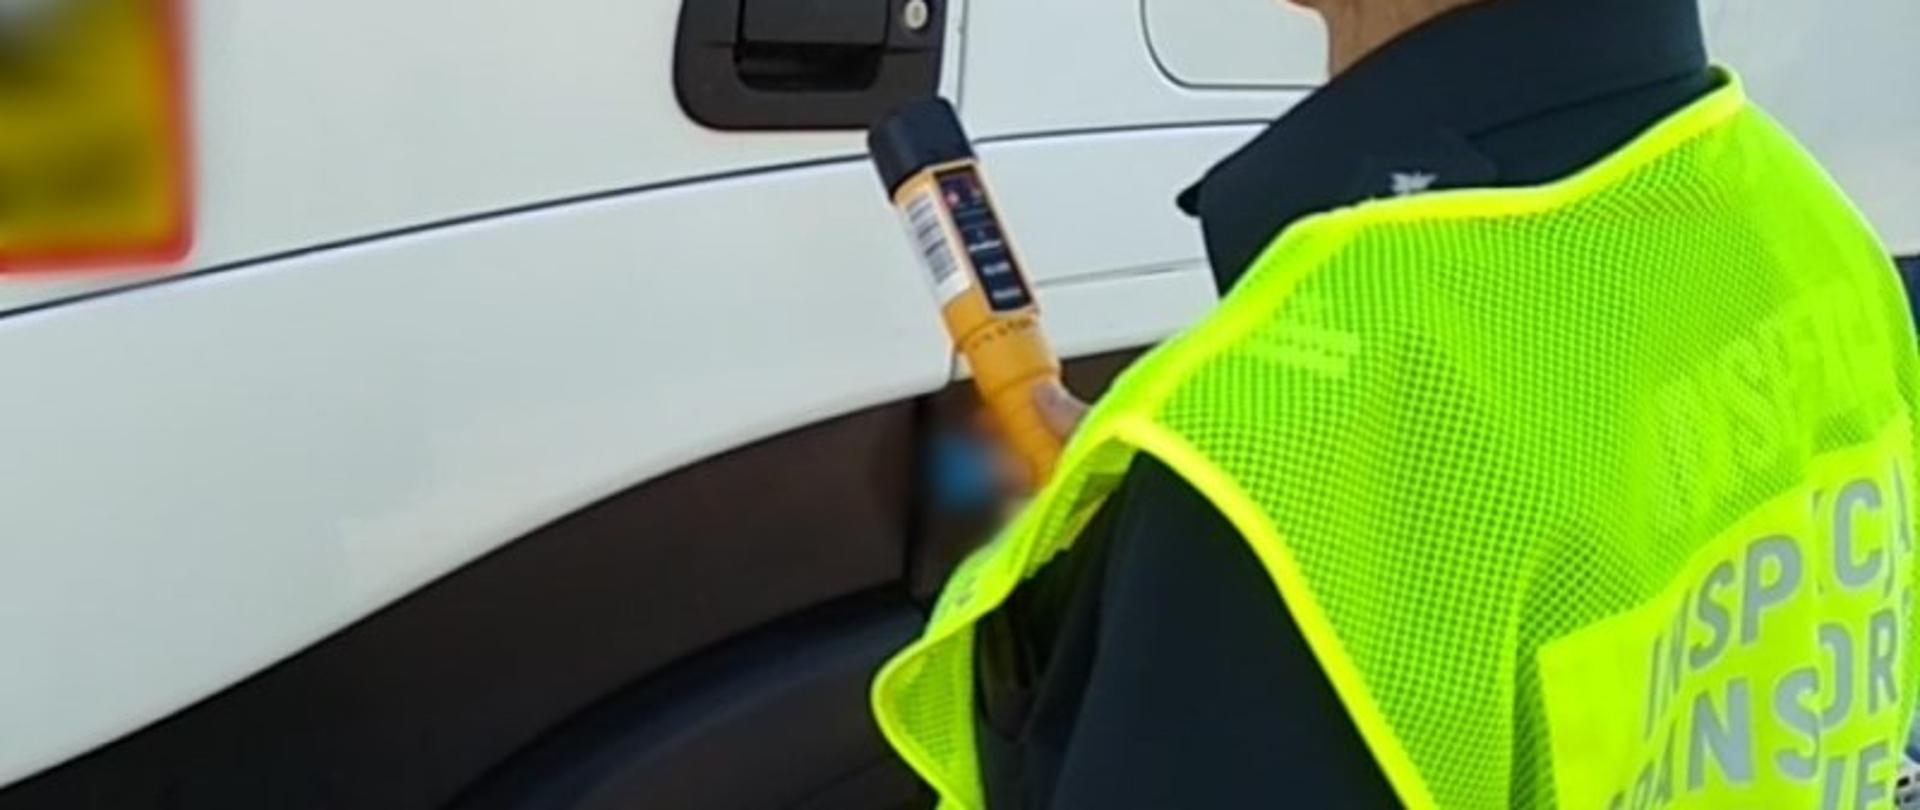 Inspektor ITD w odblaskowej kamizelce stoi obok kabiny ciężarówki i trzyma w ręku alkomat przesiewowy.